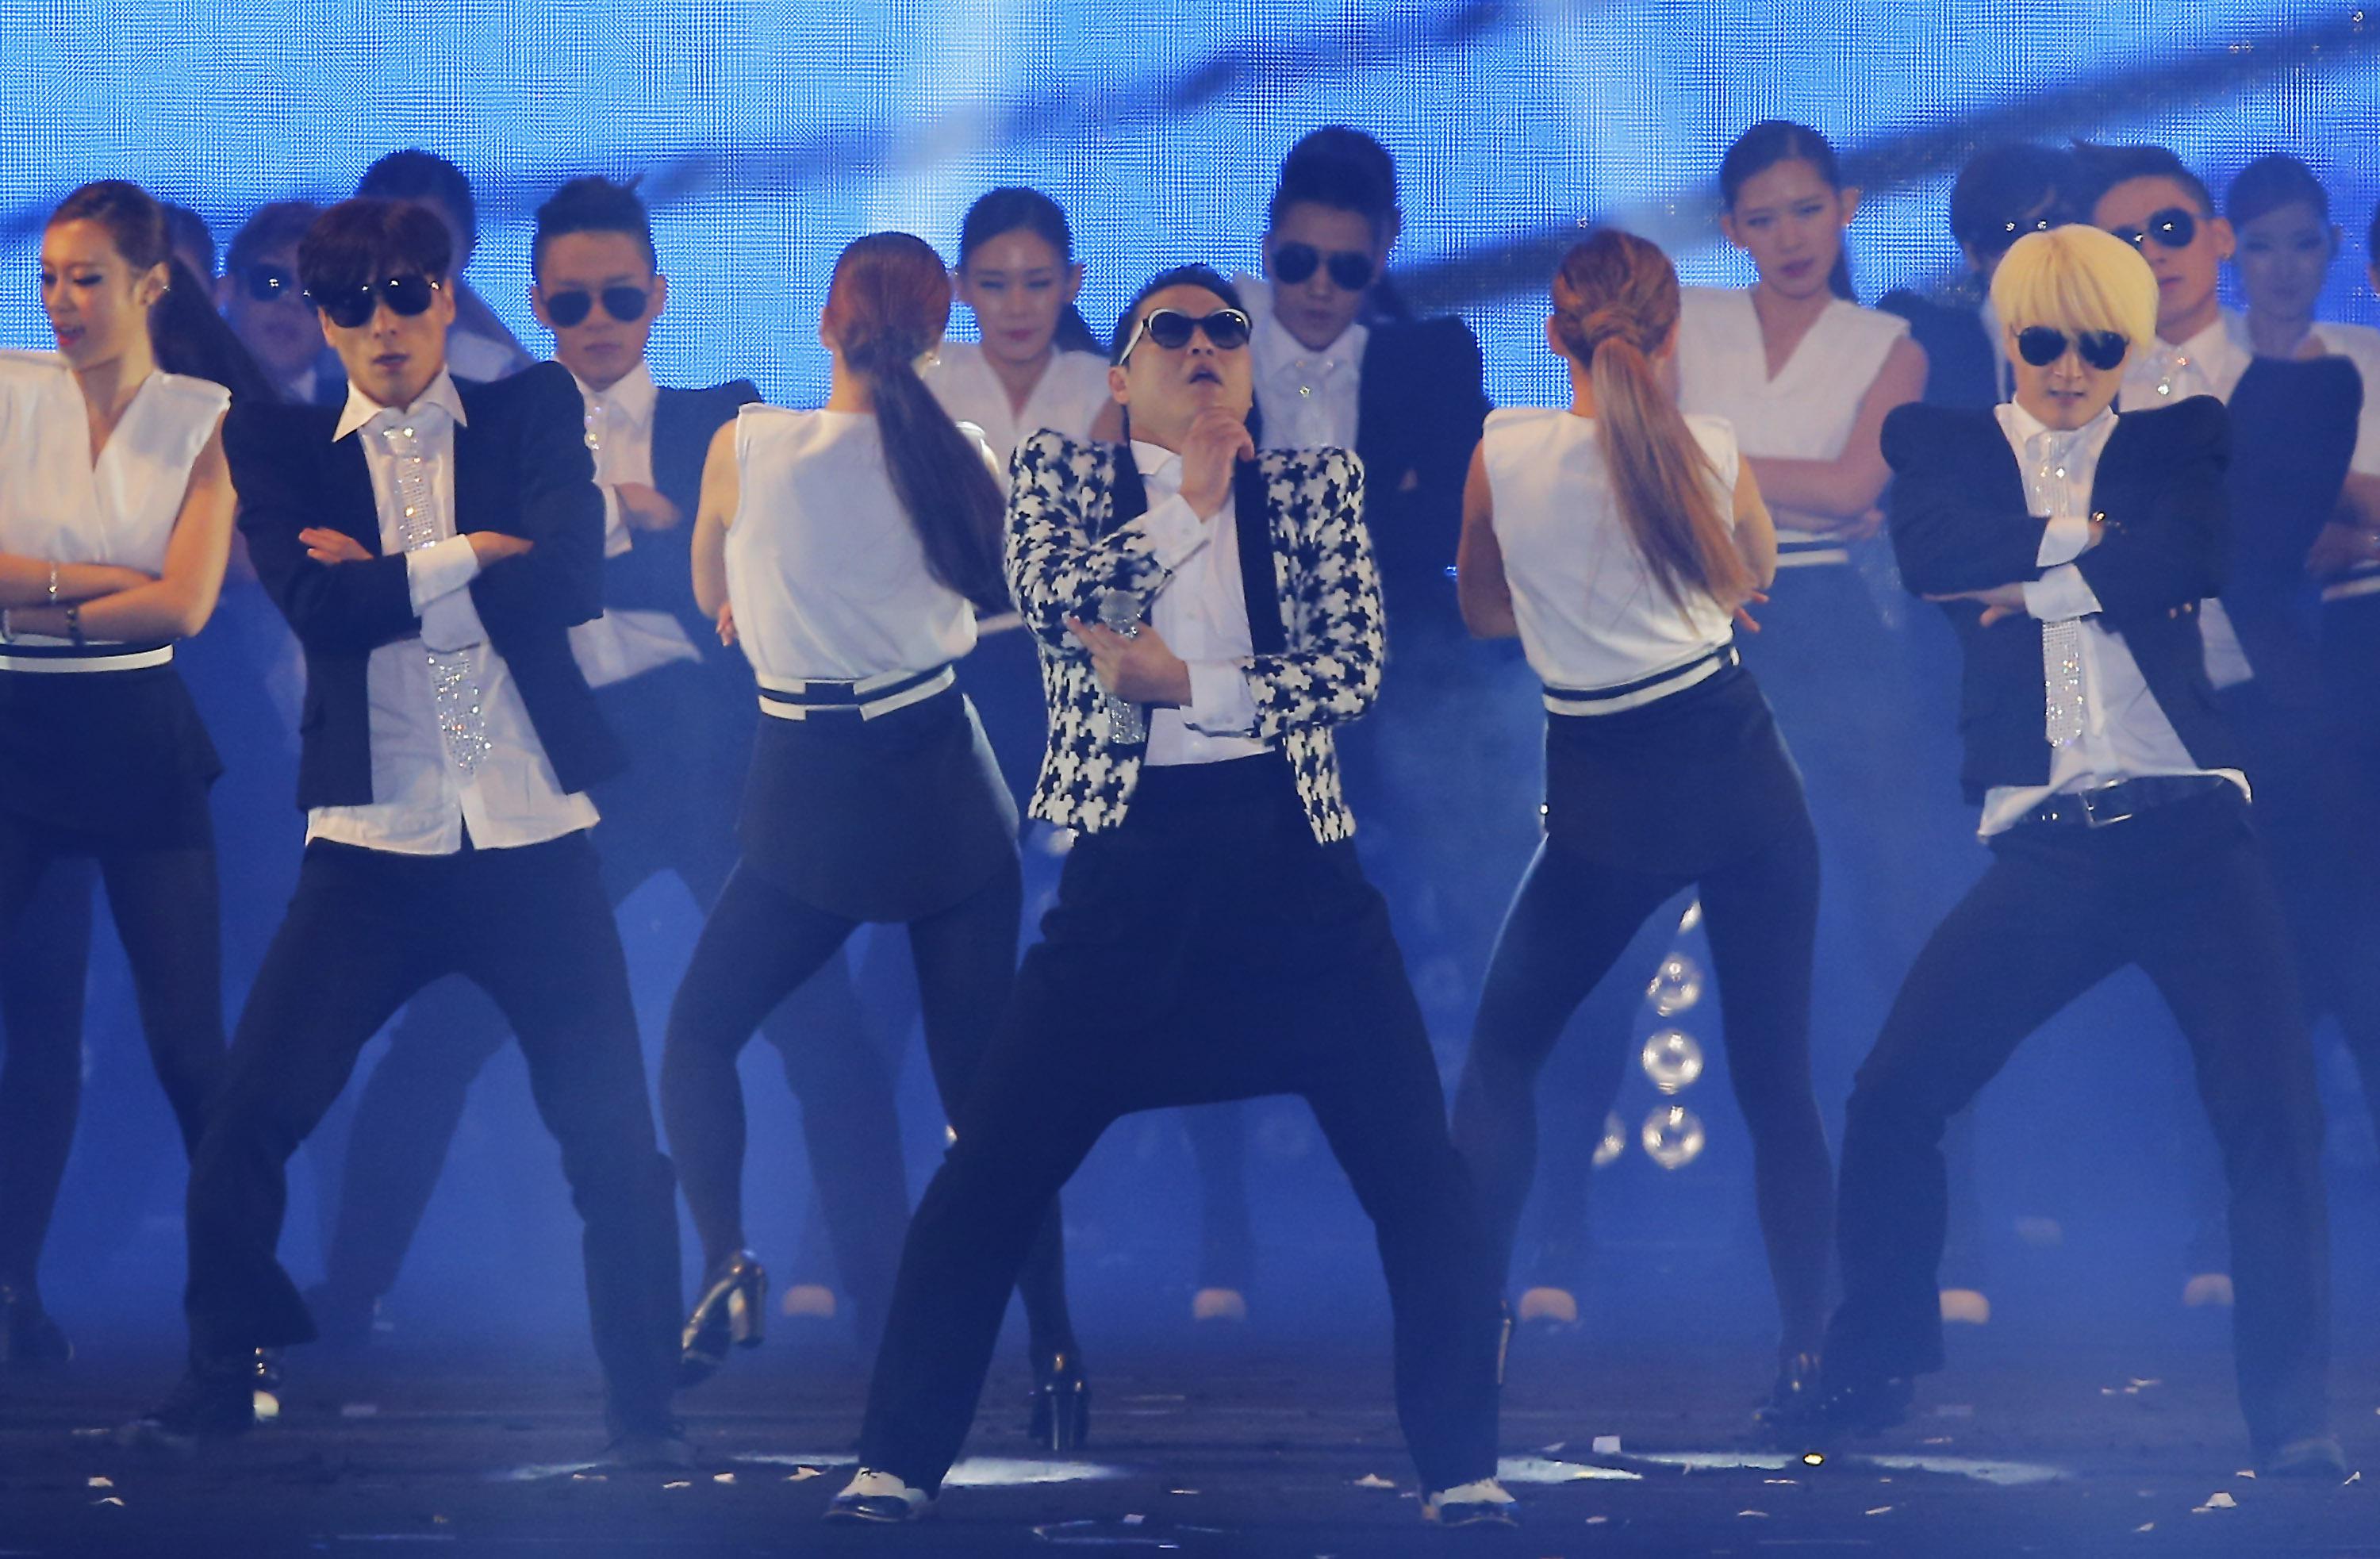 Psy Unveils Gentleman Music Video in Concert